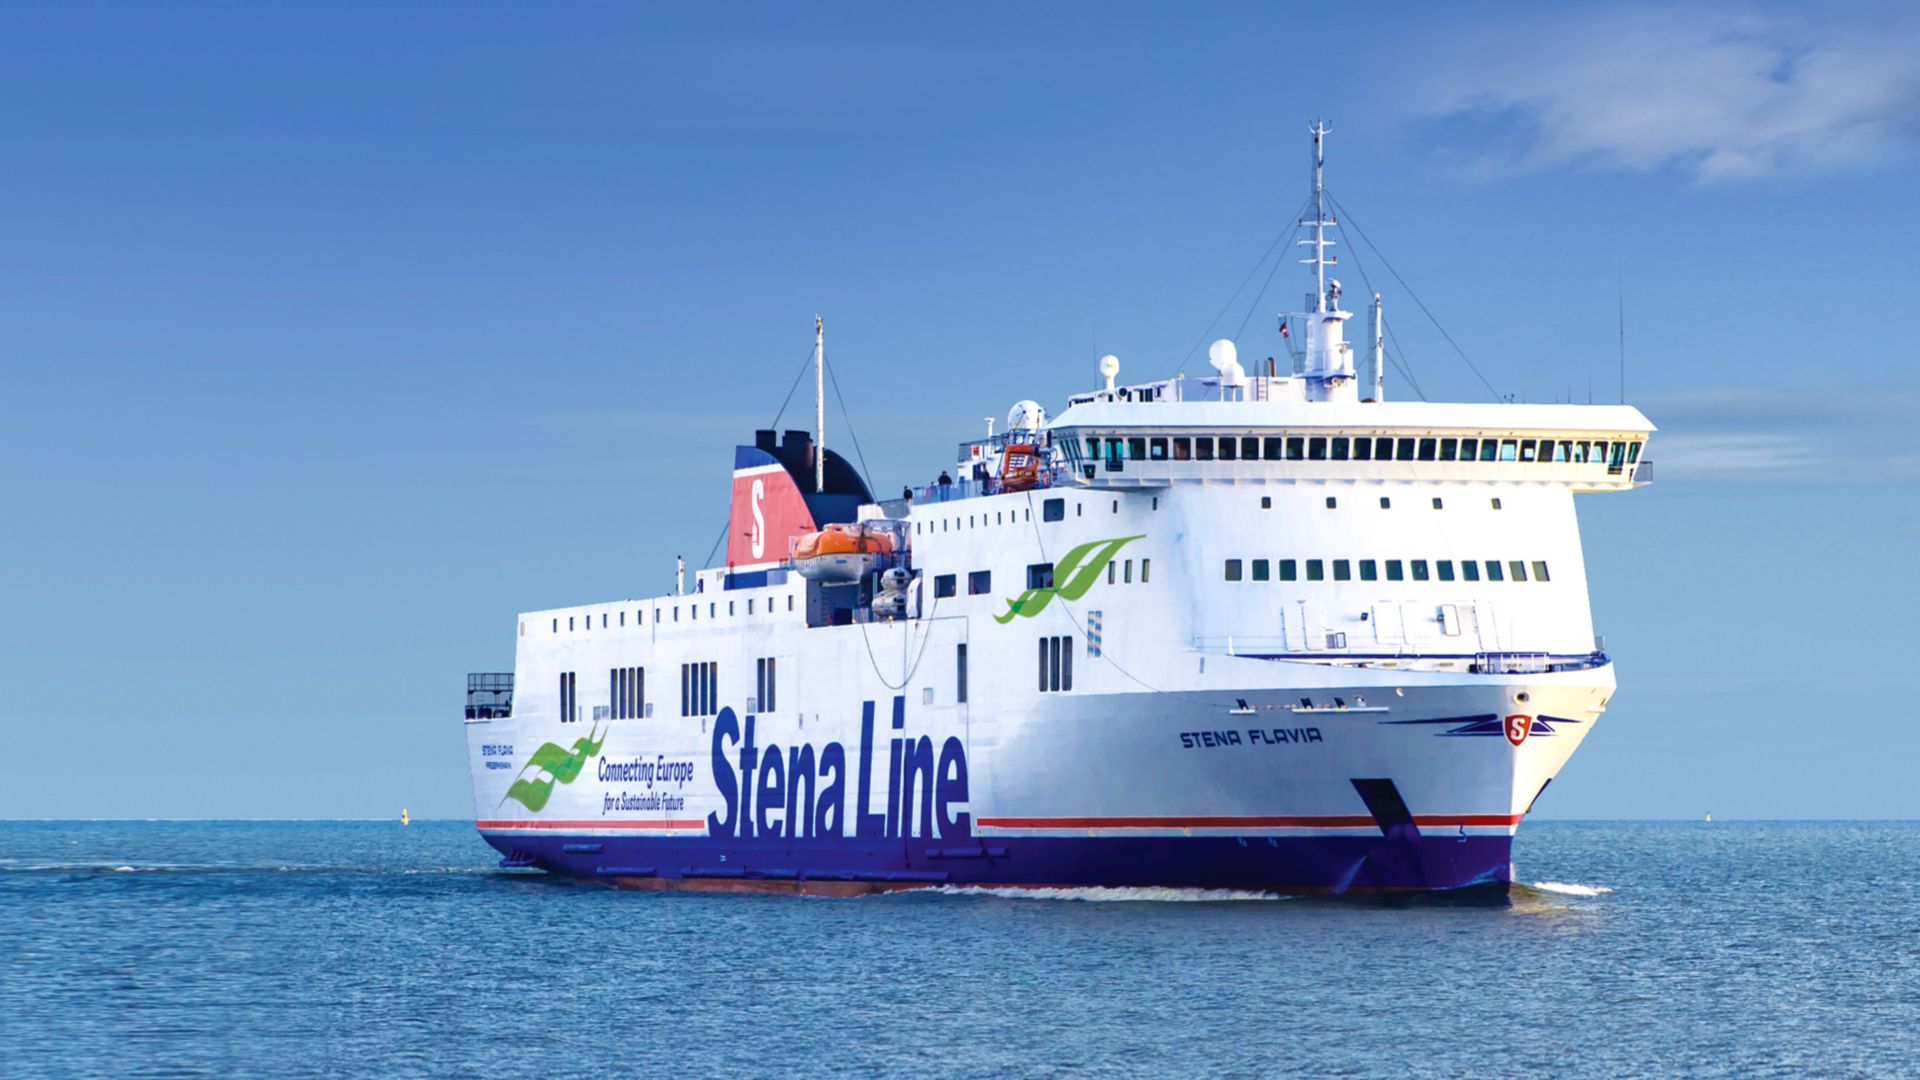 Stena Flavia ferry at sea